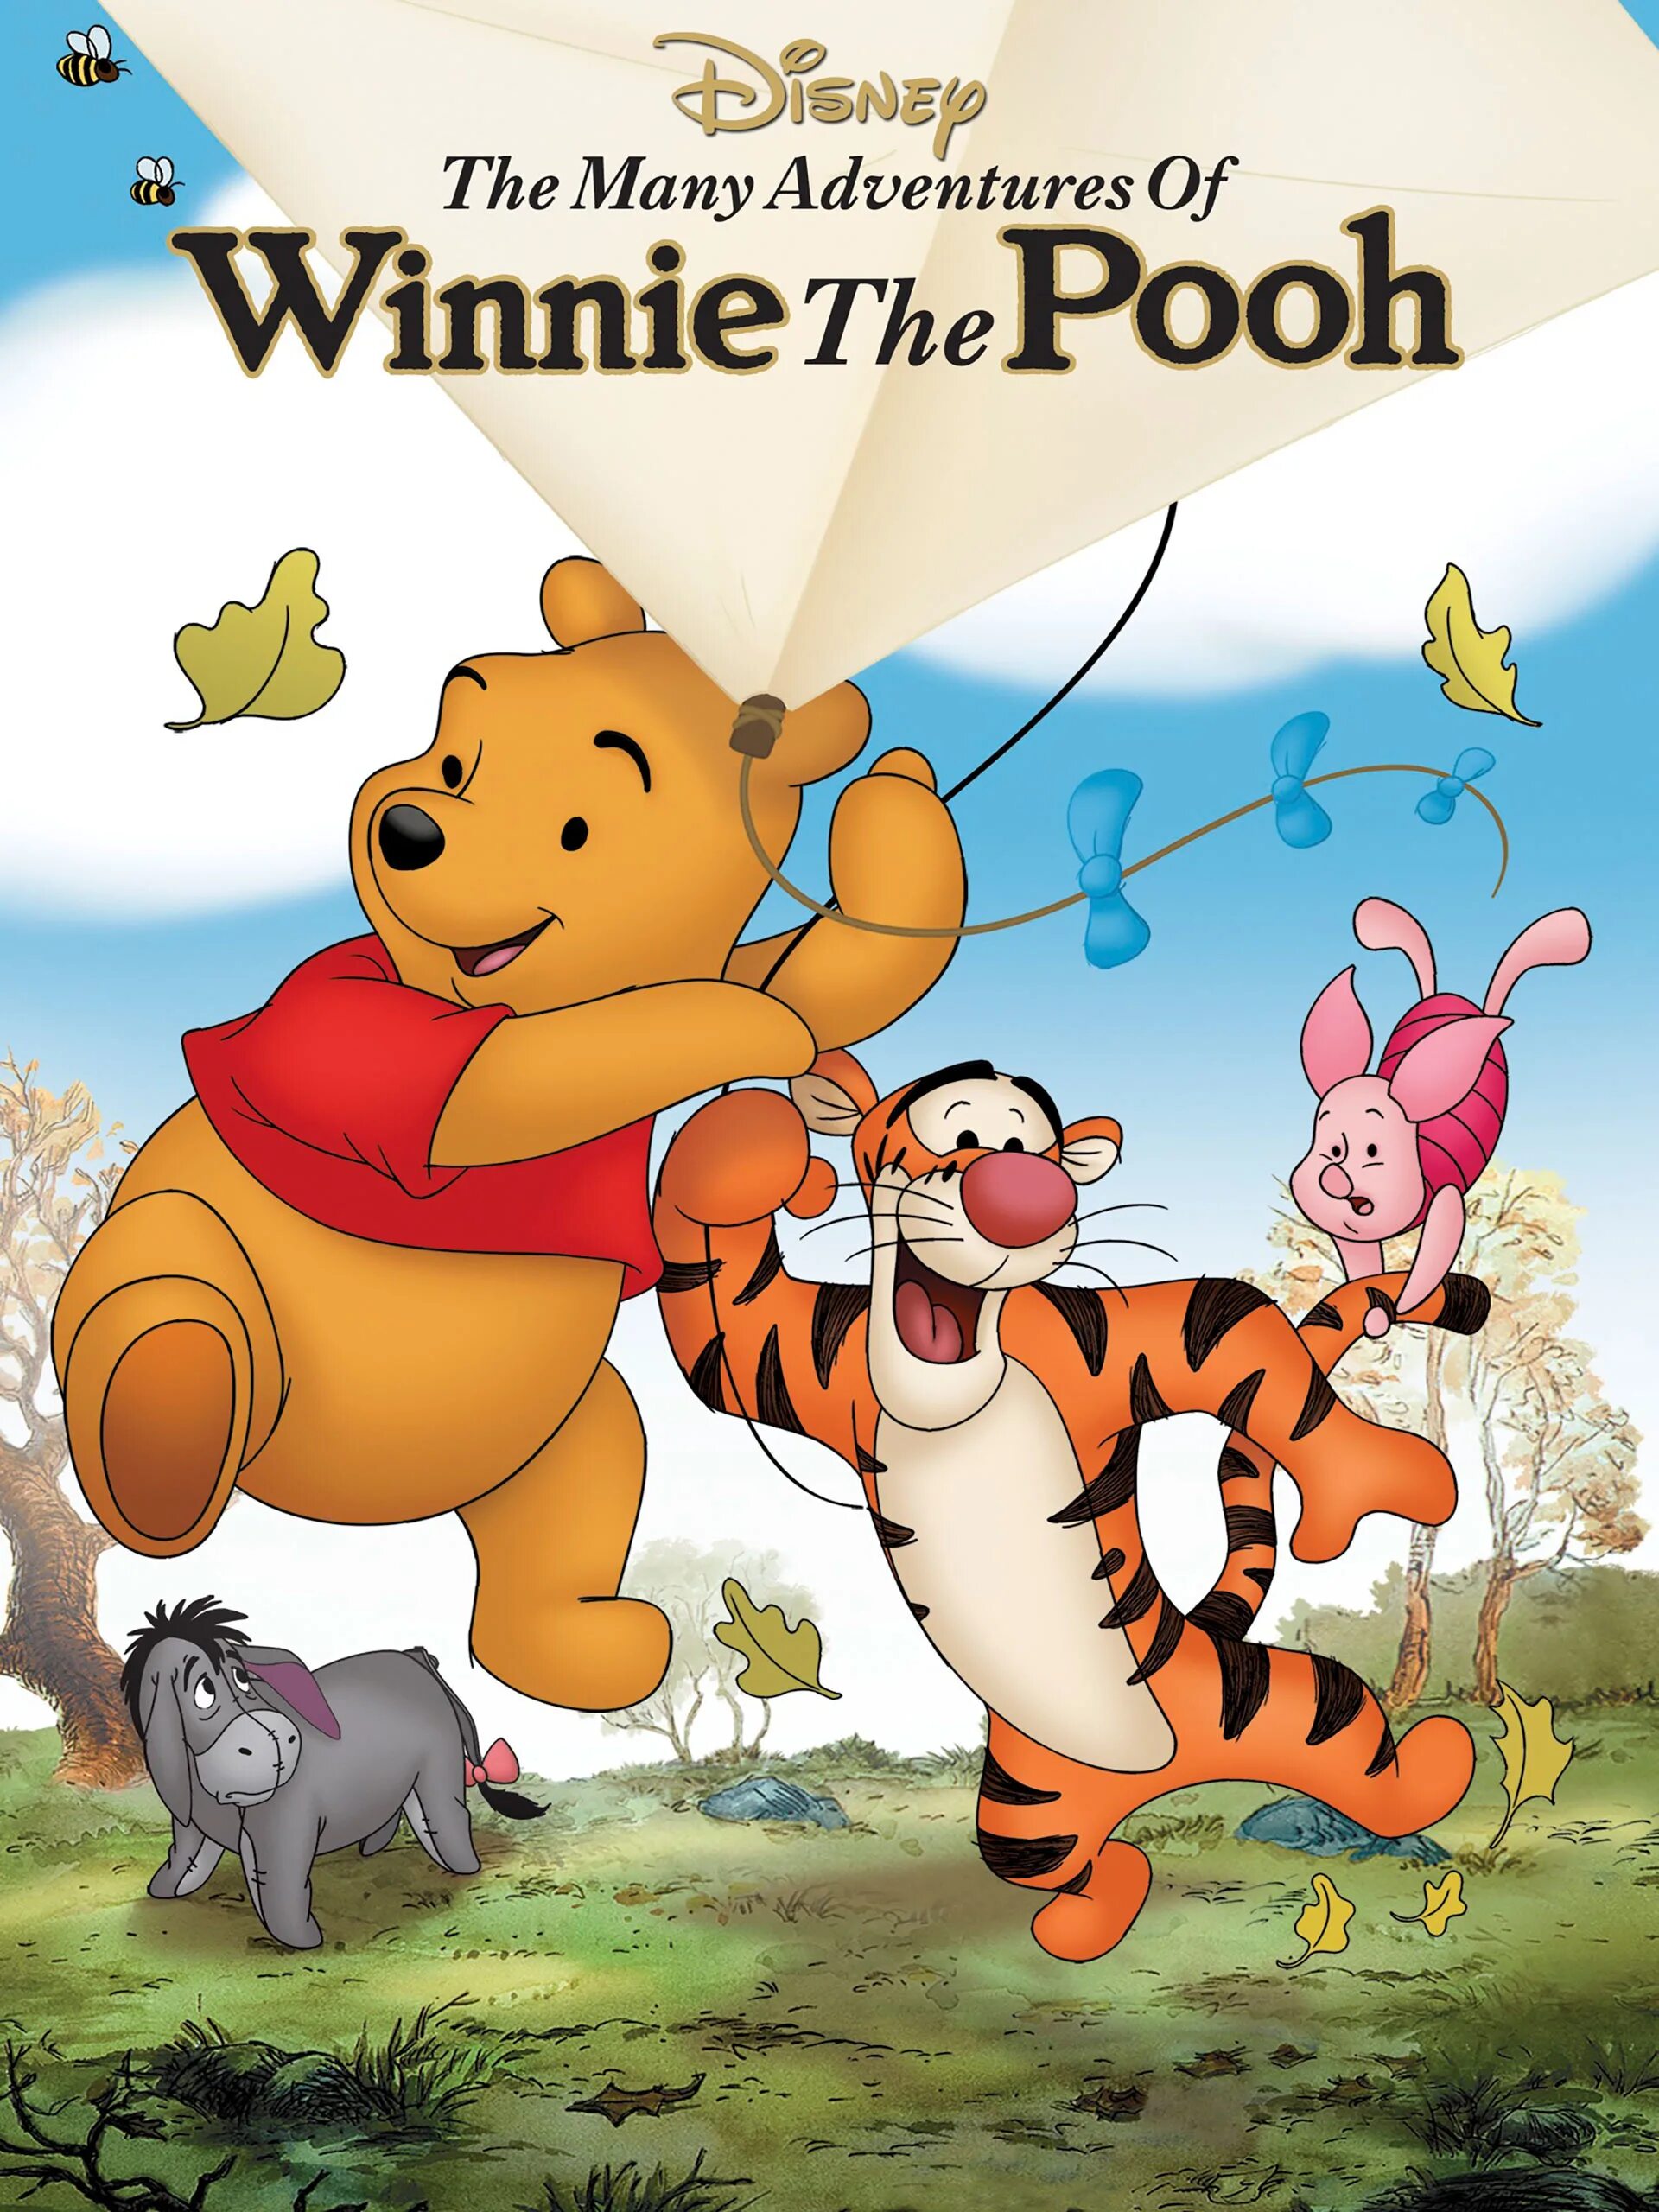 Винни пух 1977. Приключения Винни пуха. Приключения Винни пуха Дисней. Winnie the pooh adventures